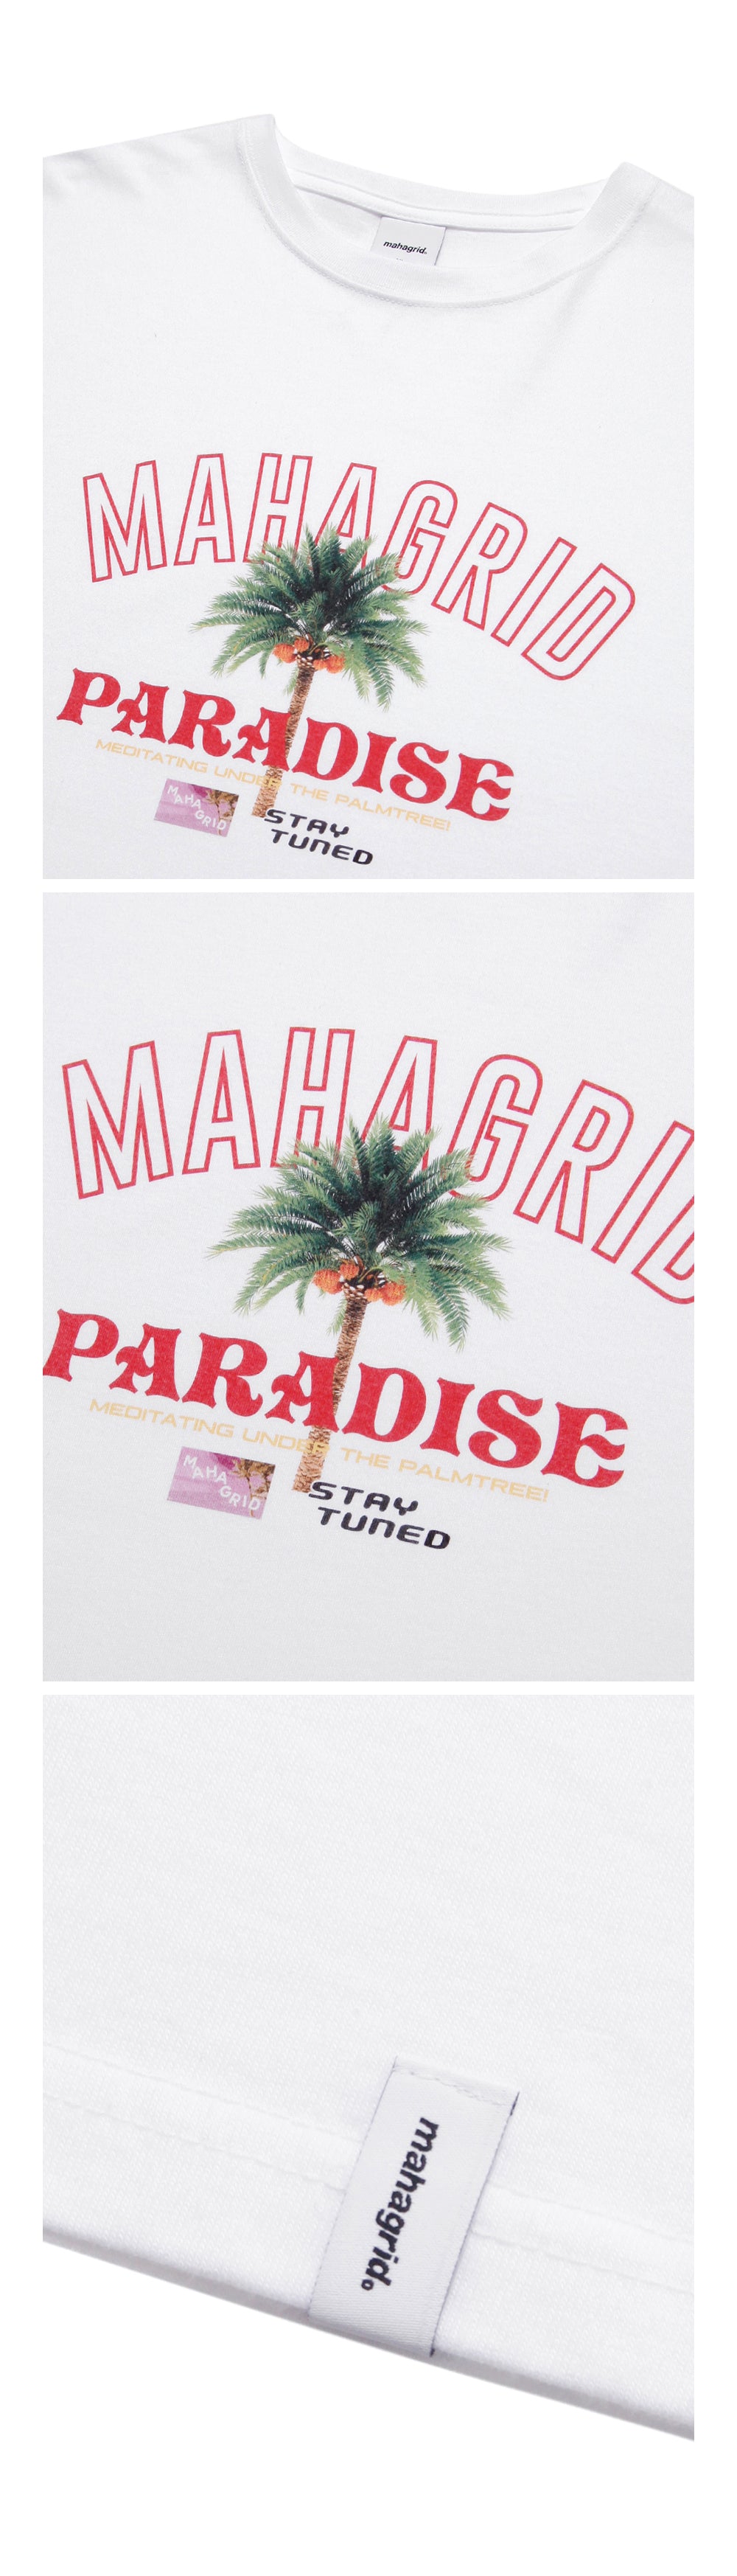 Mahagrid x Stray Kids Paradise Tee